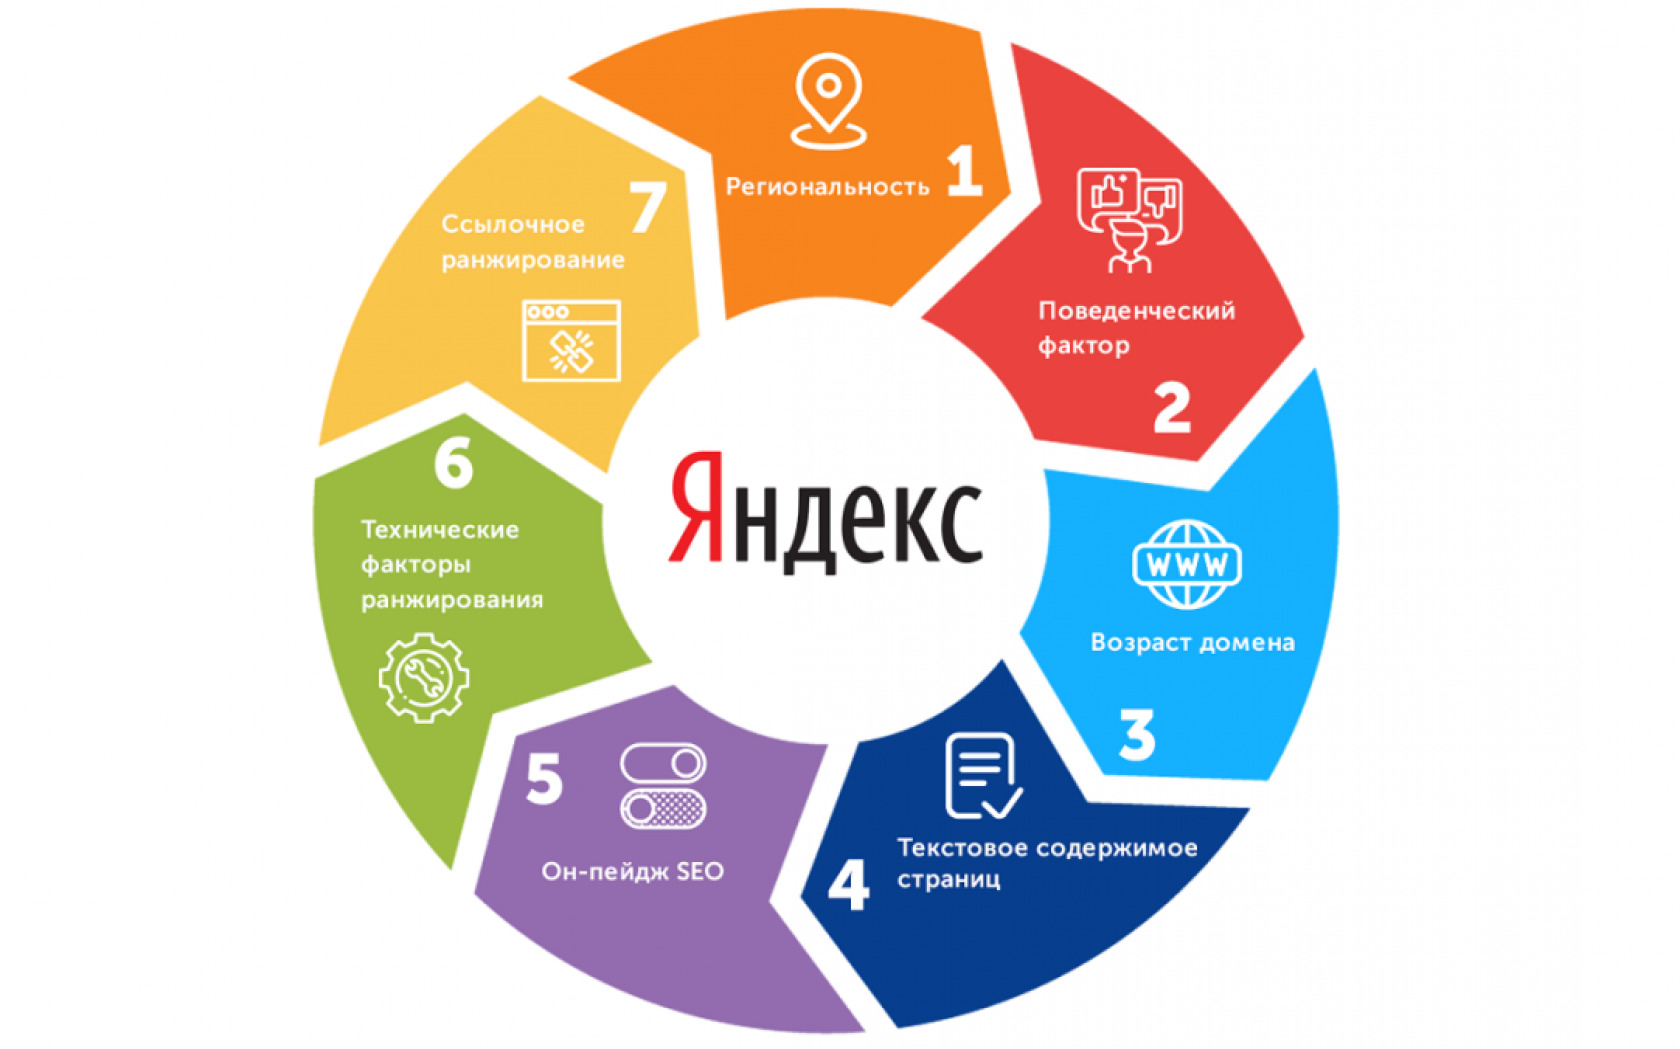 Ранжирование в Яндексе. Как и за что попадают под фильтры